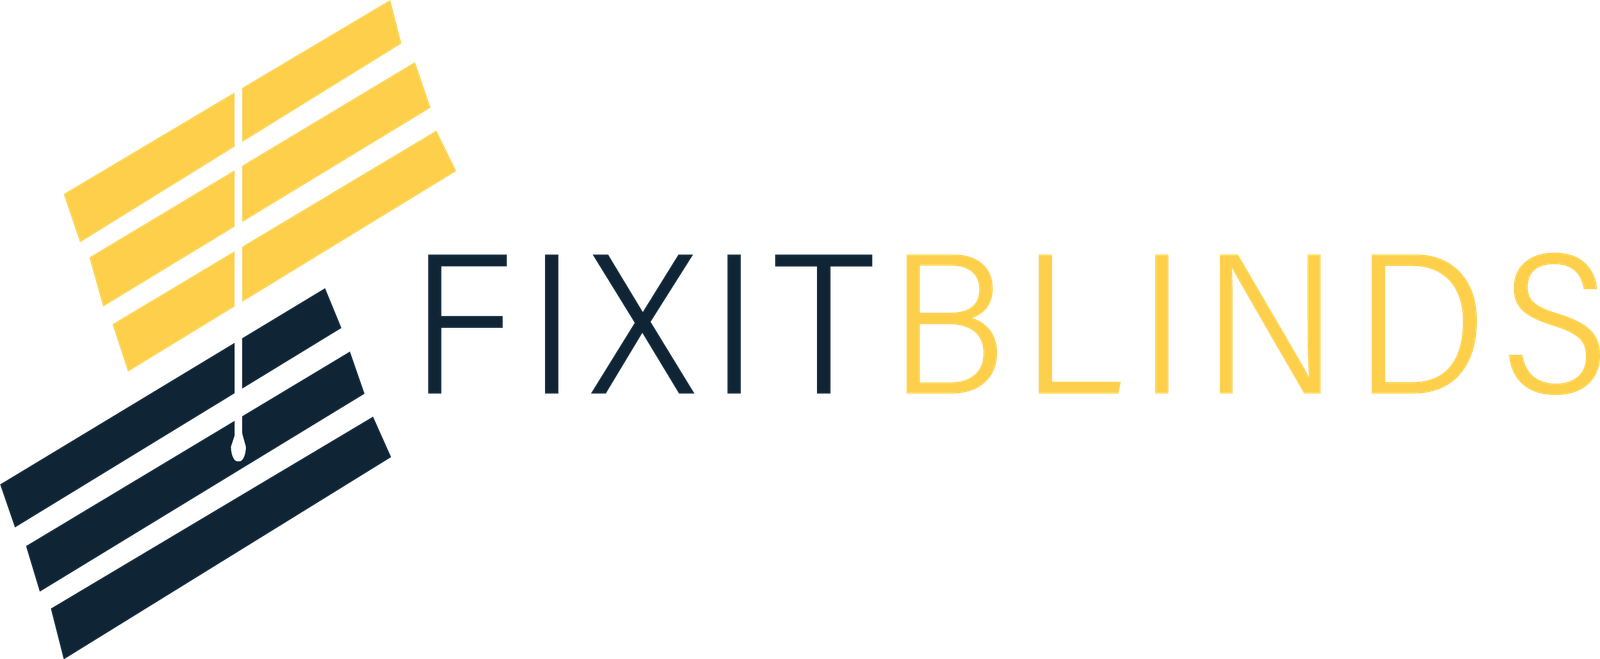 fixitblinds-logo